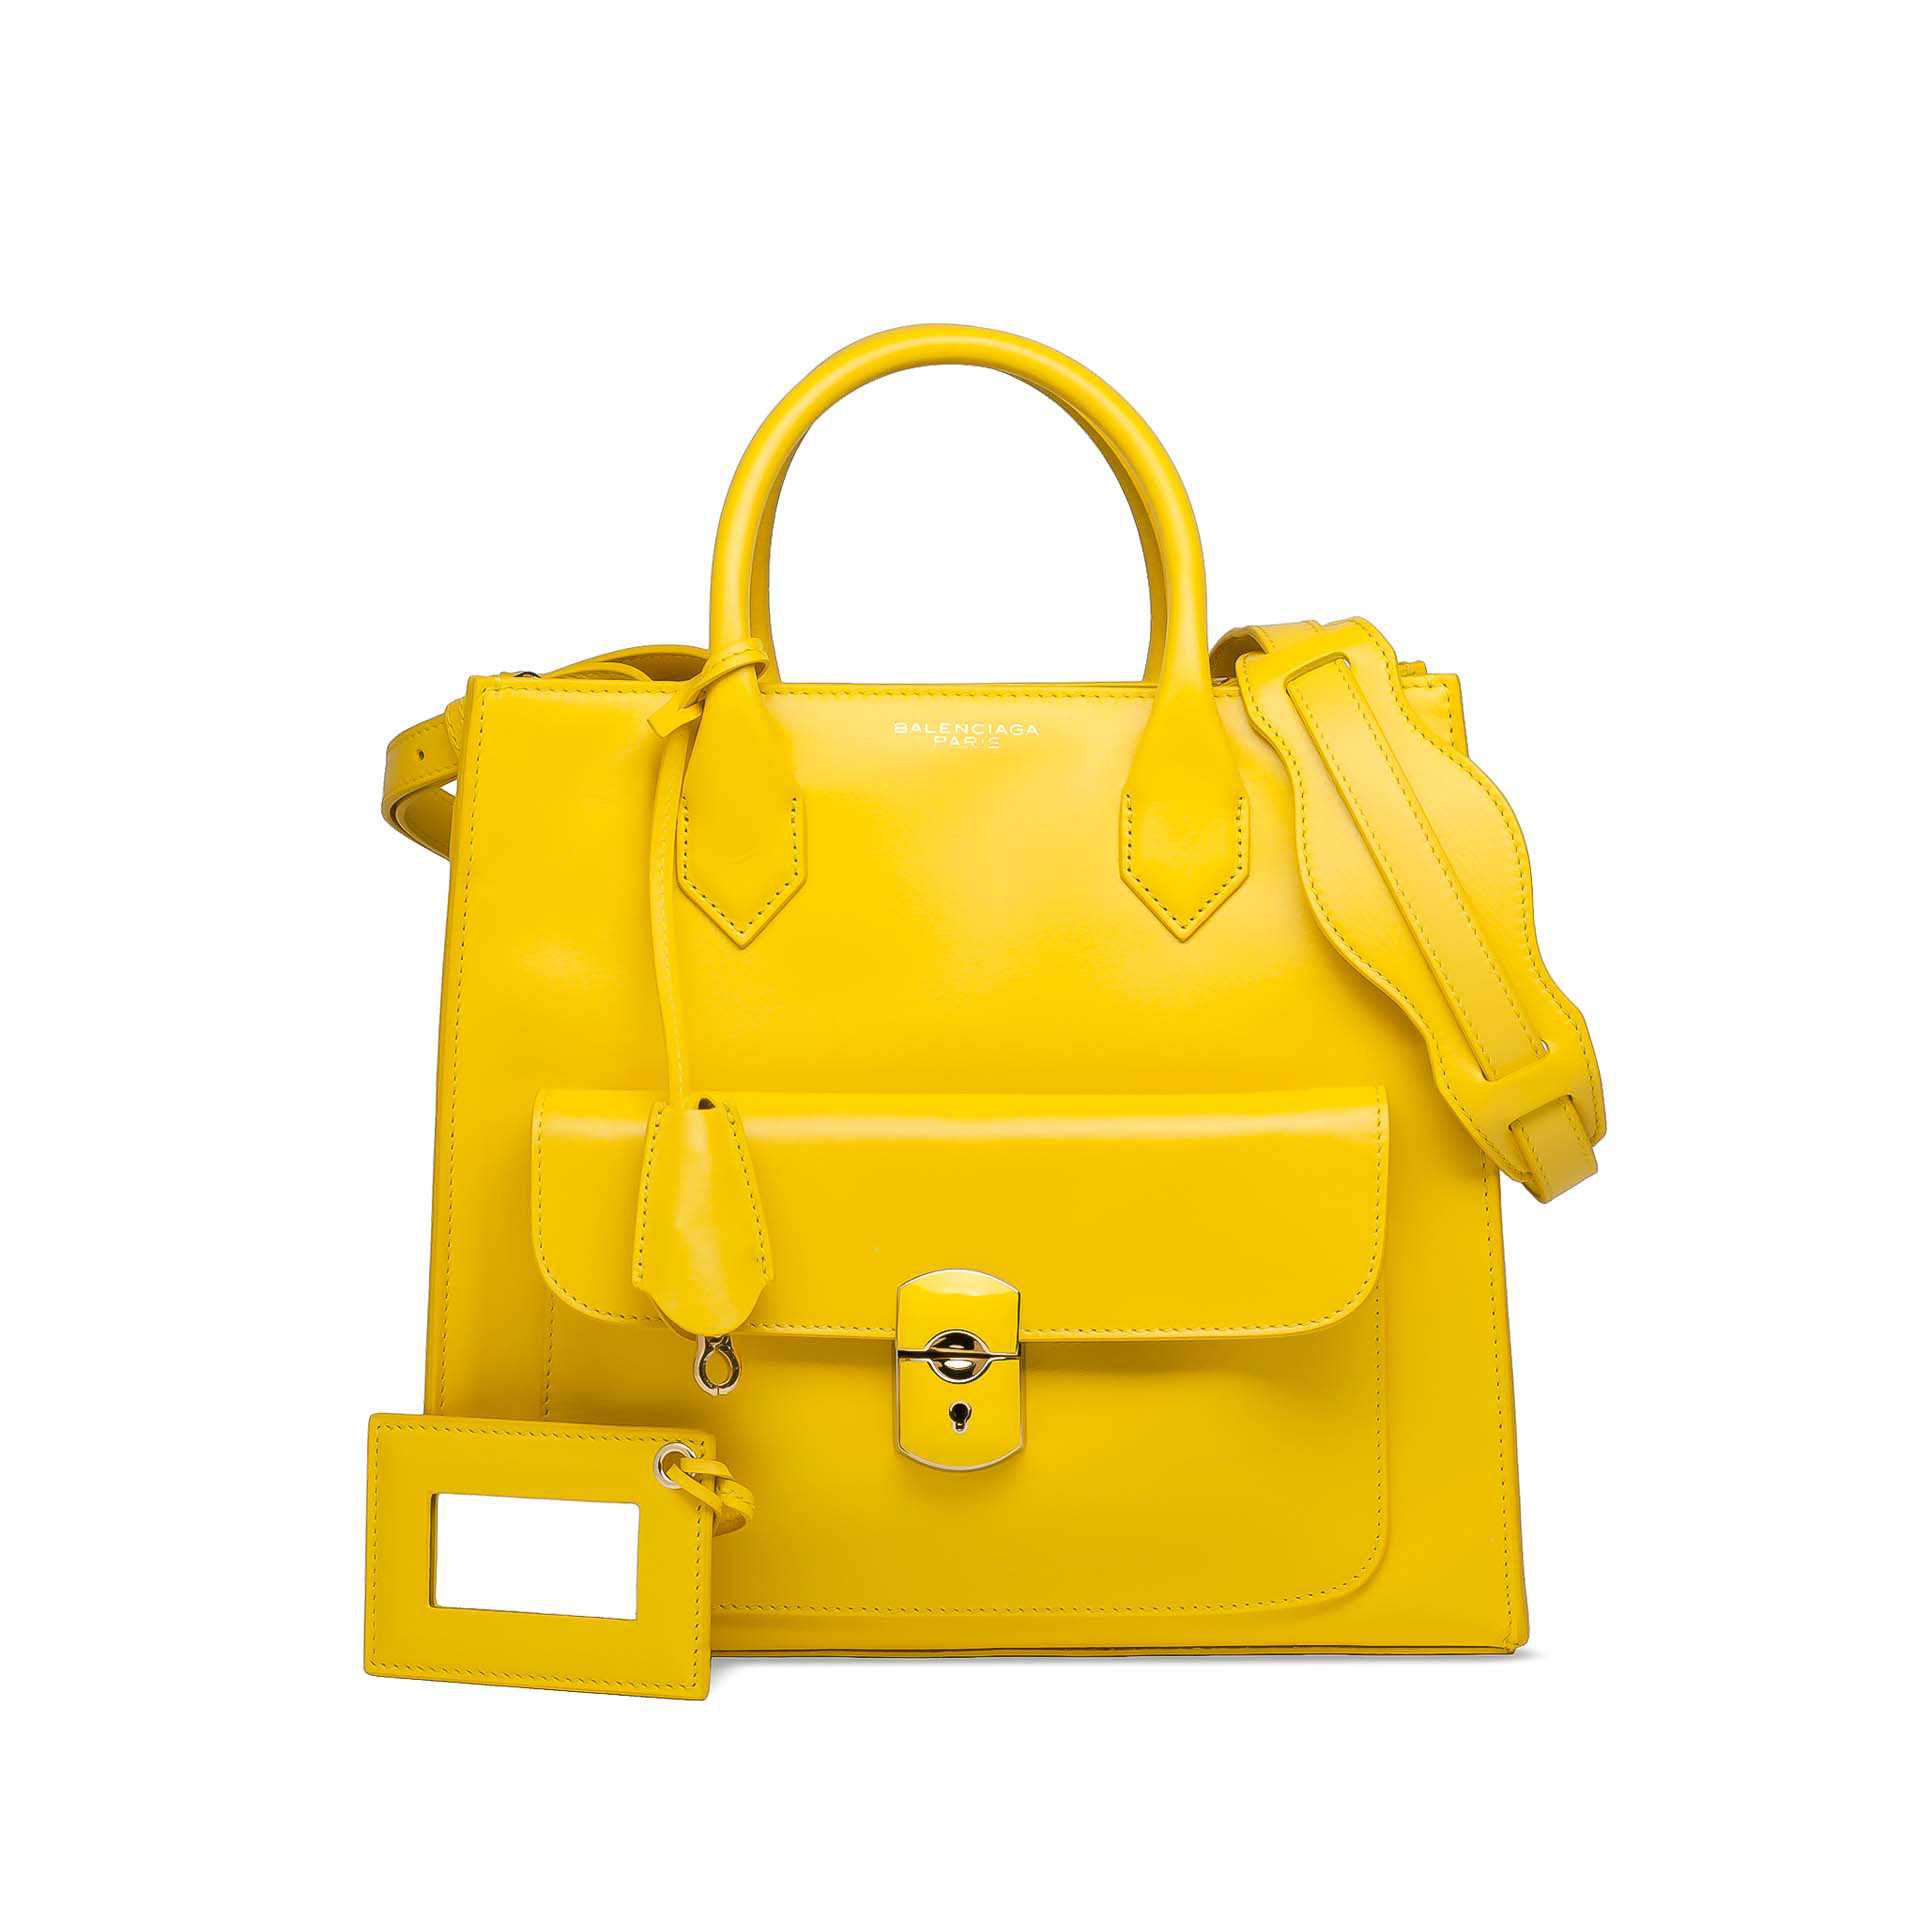 Баленсиага сумка желтая